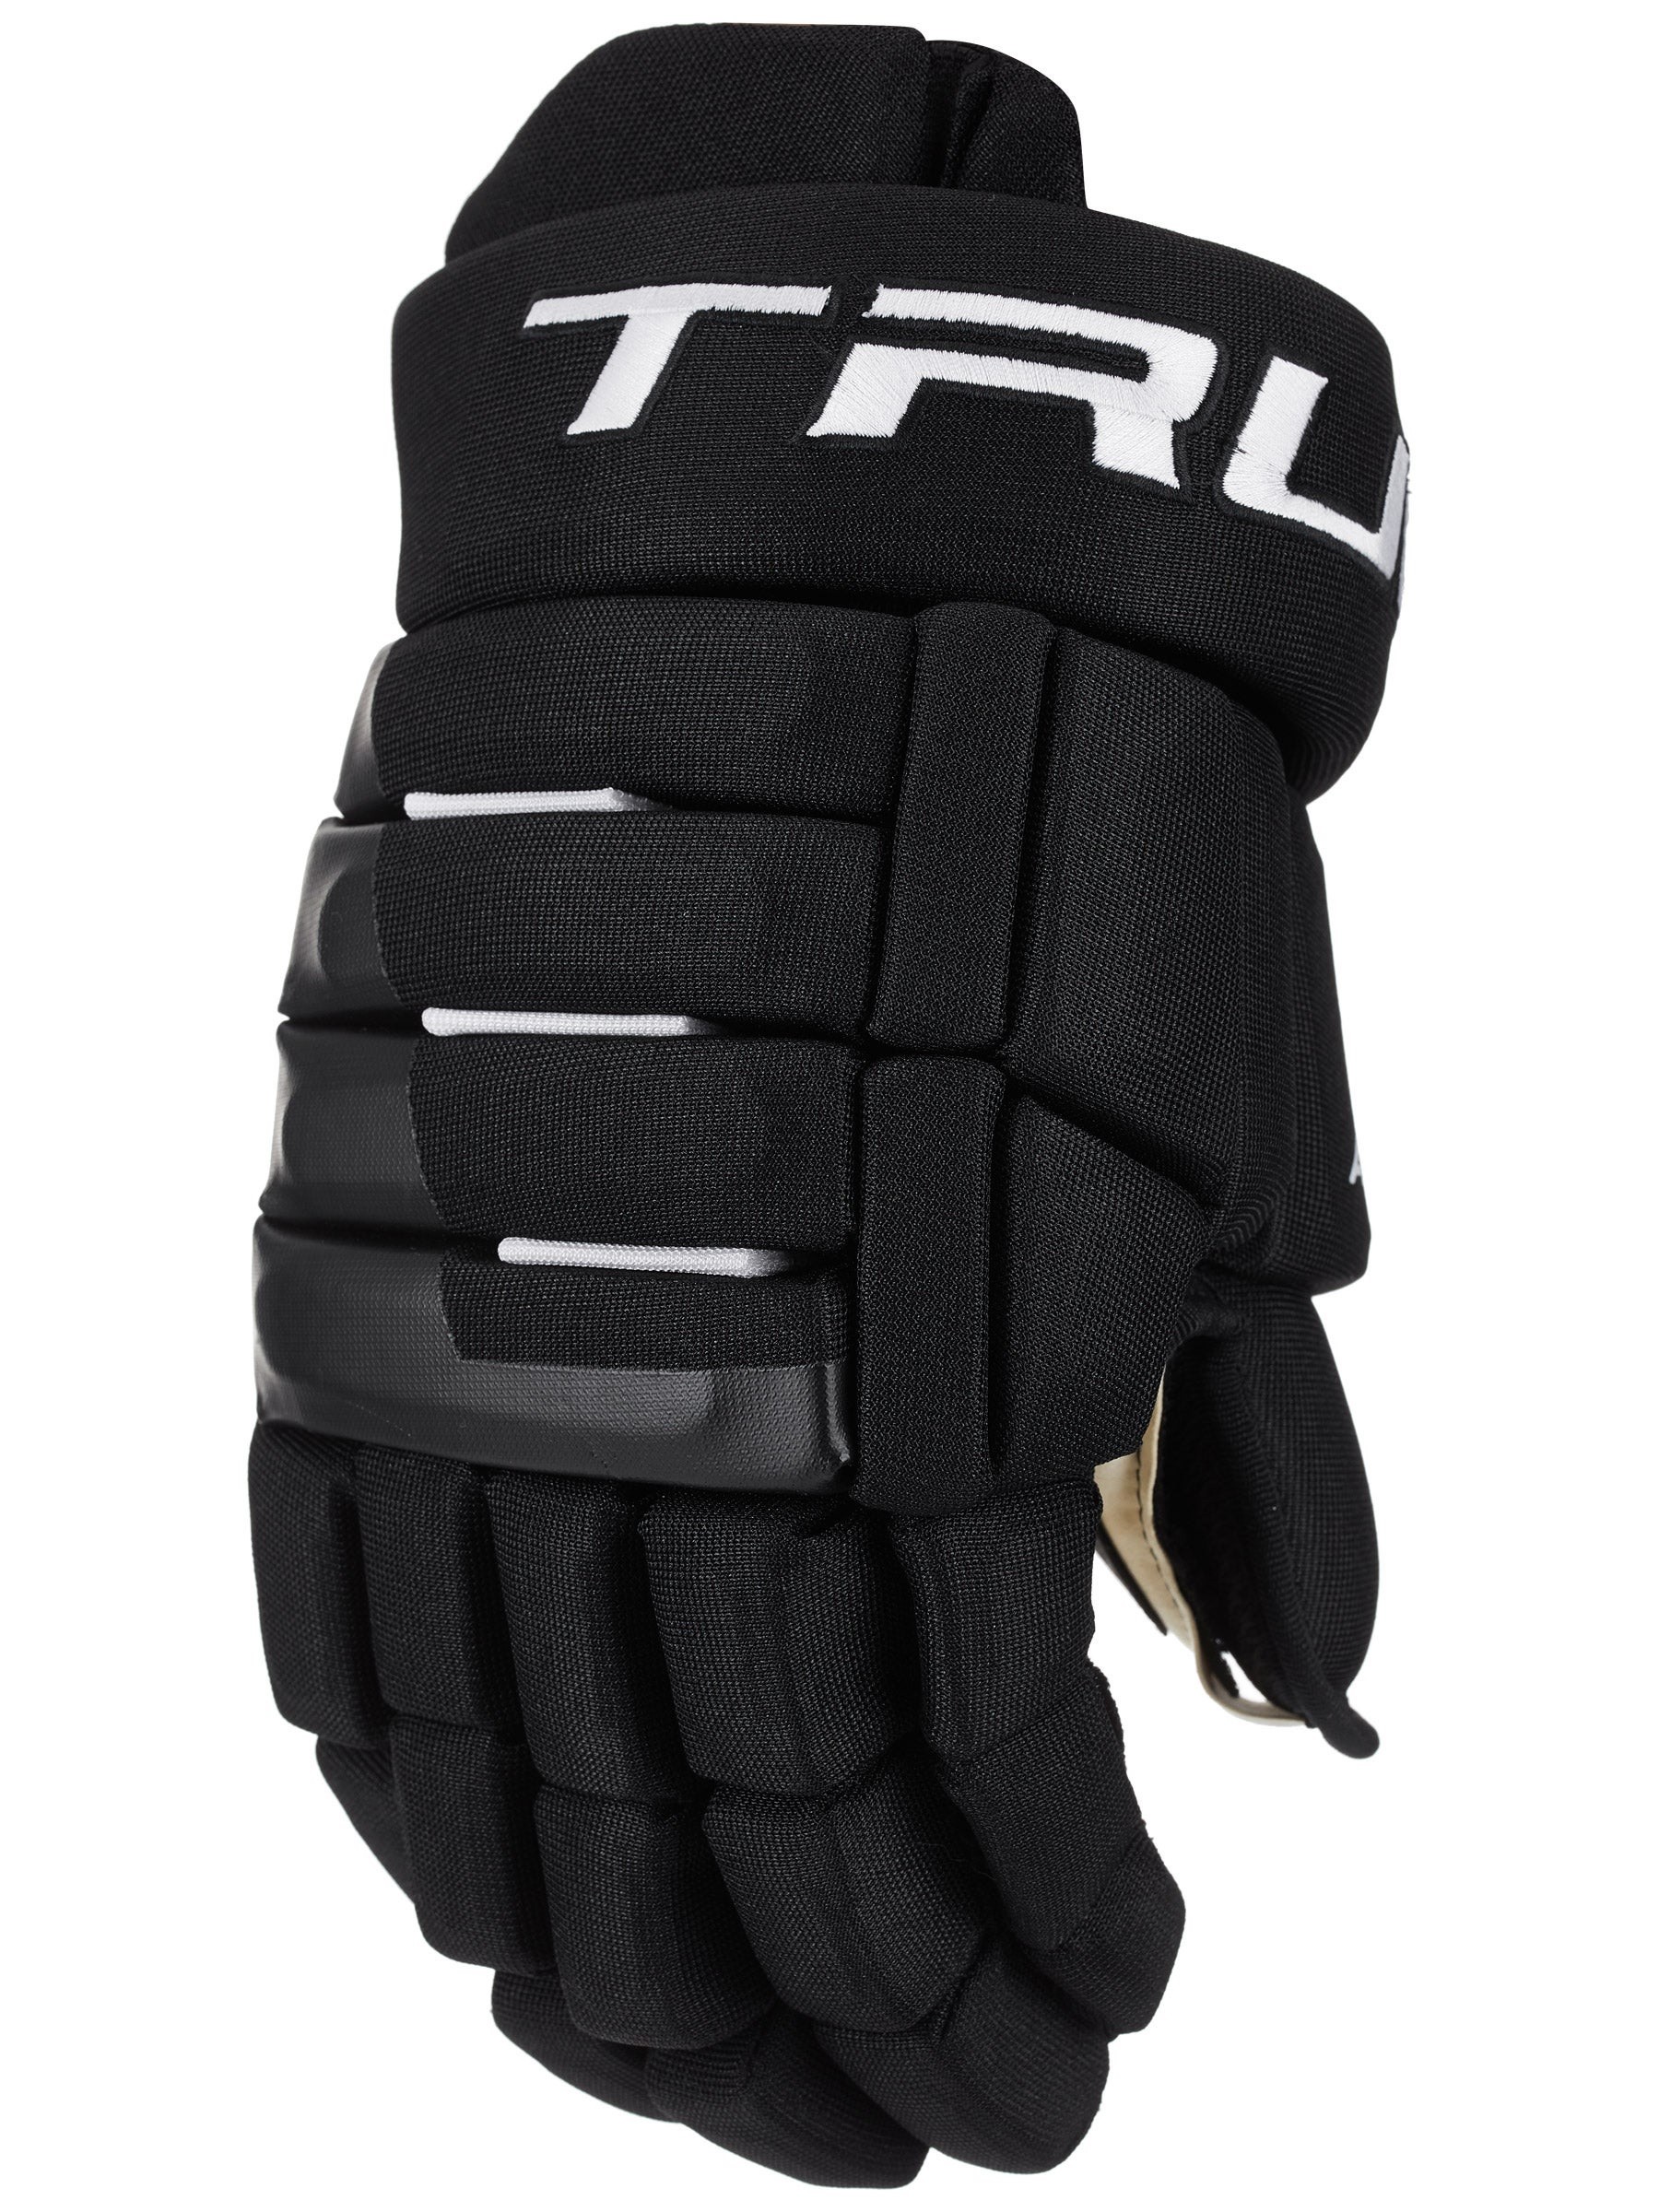 TRUE A2.2 SBP Senior Ice Hockey Gloves